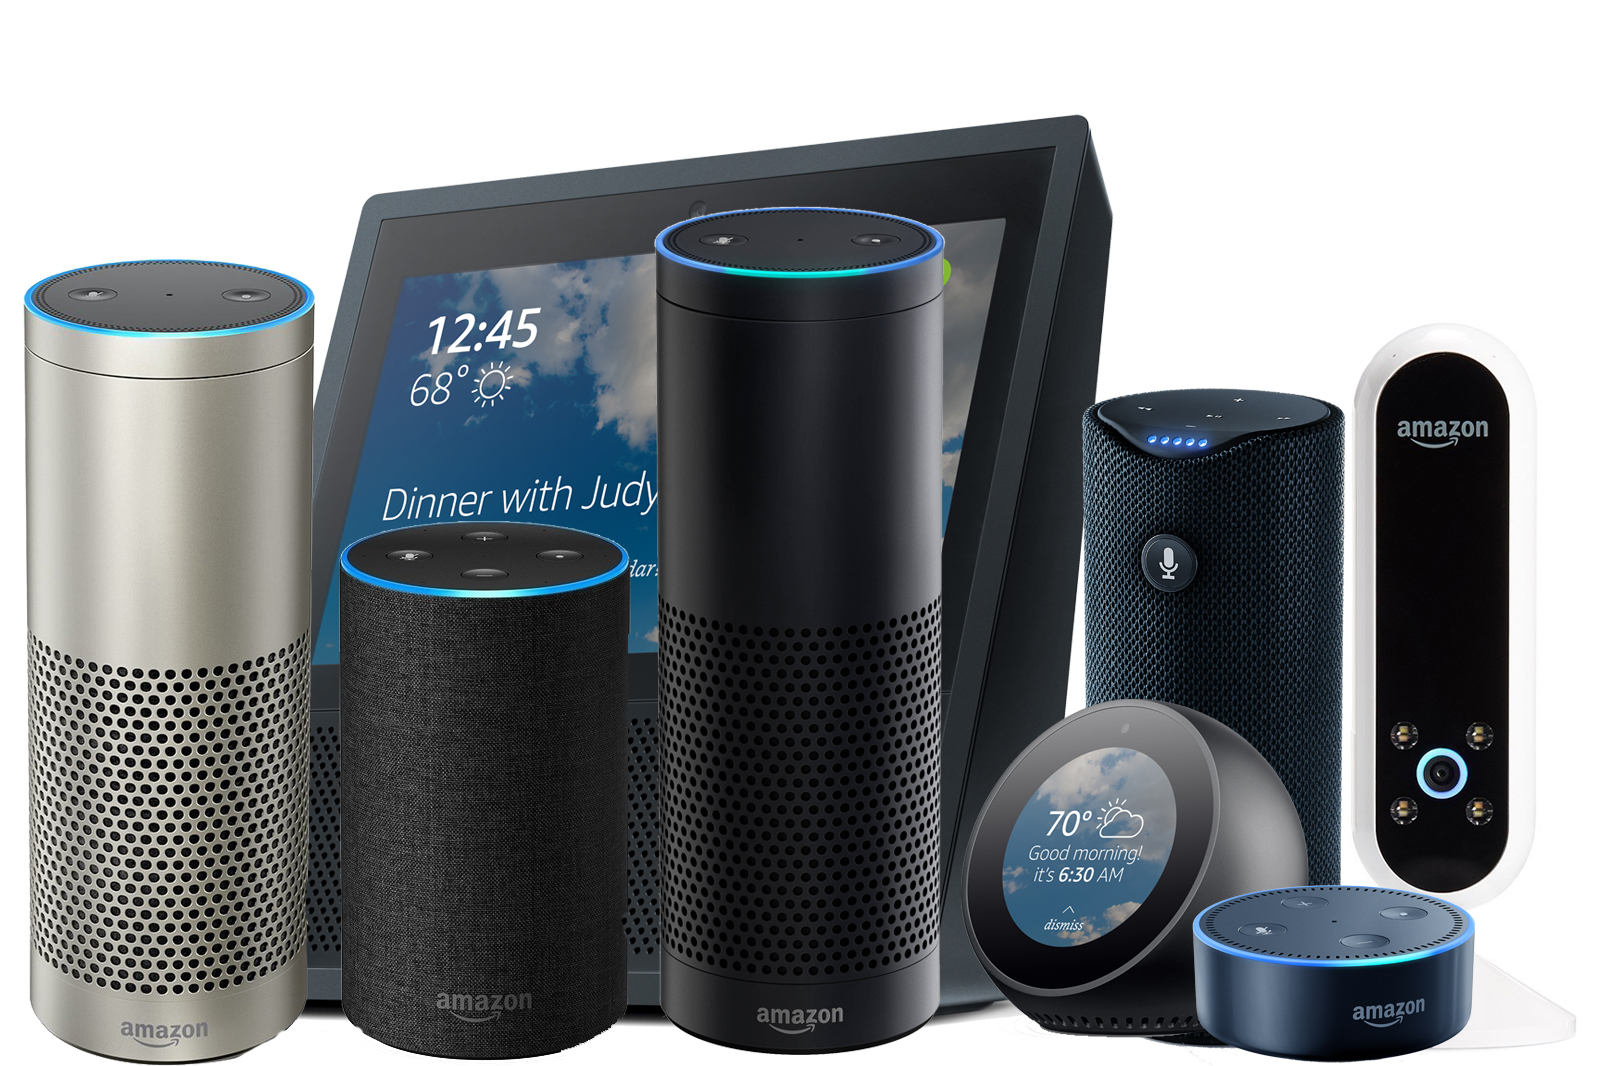 Amazon echo devices